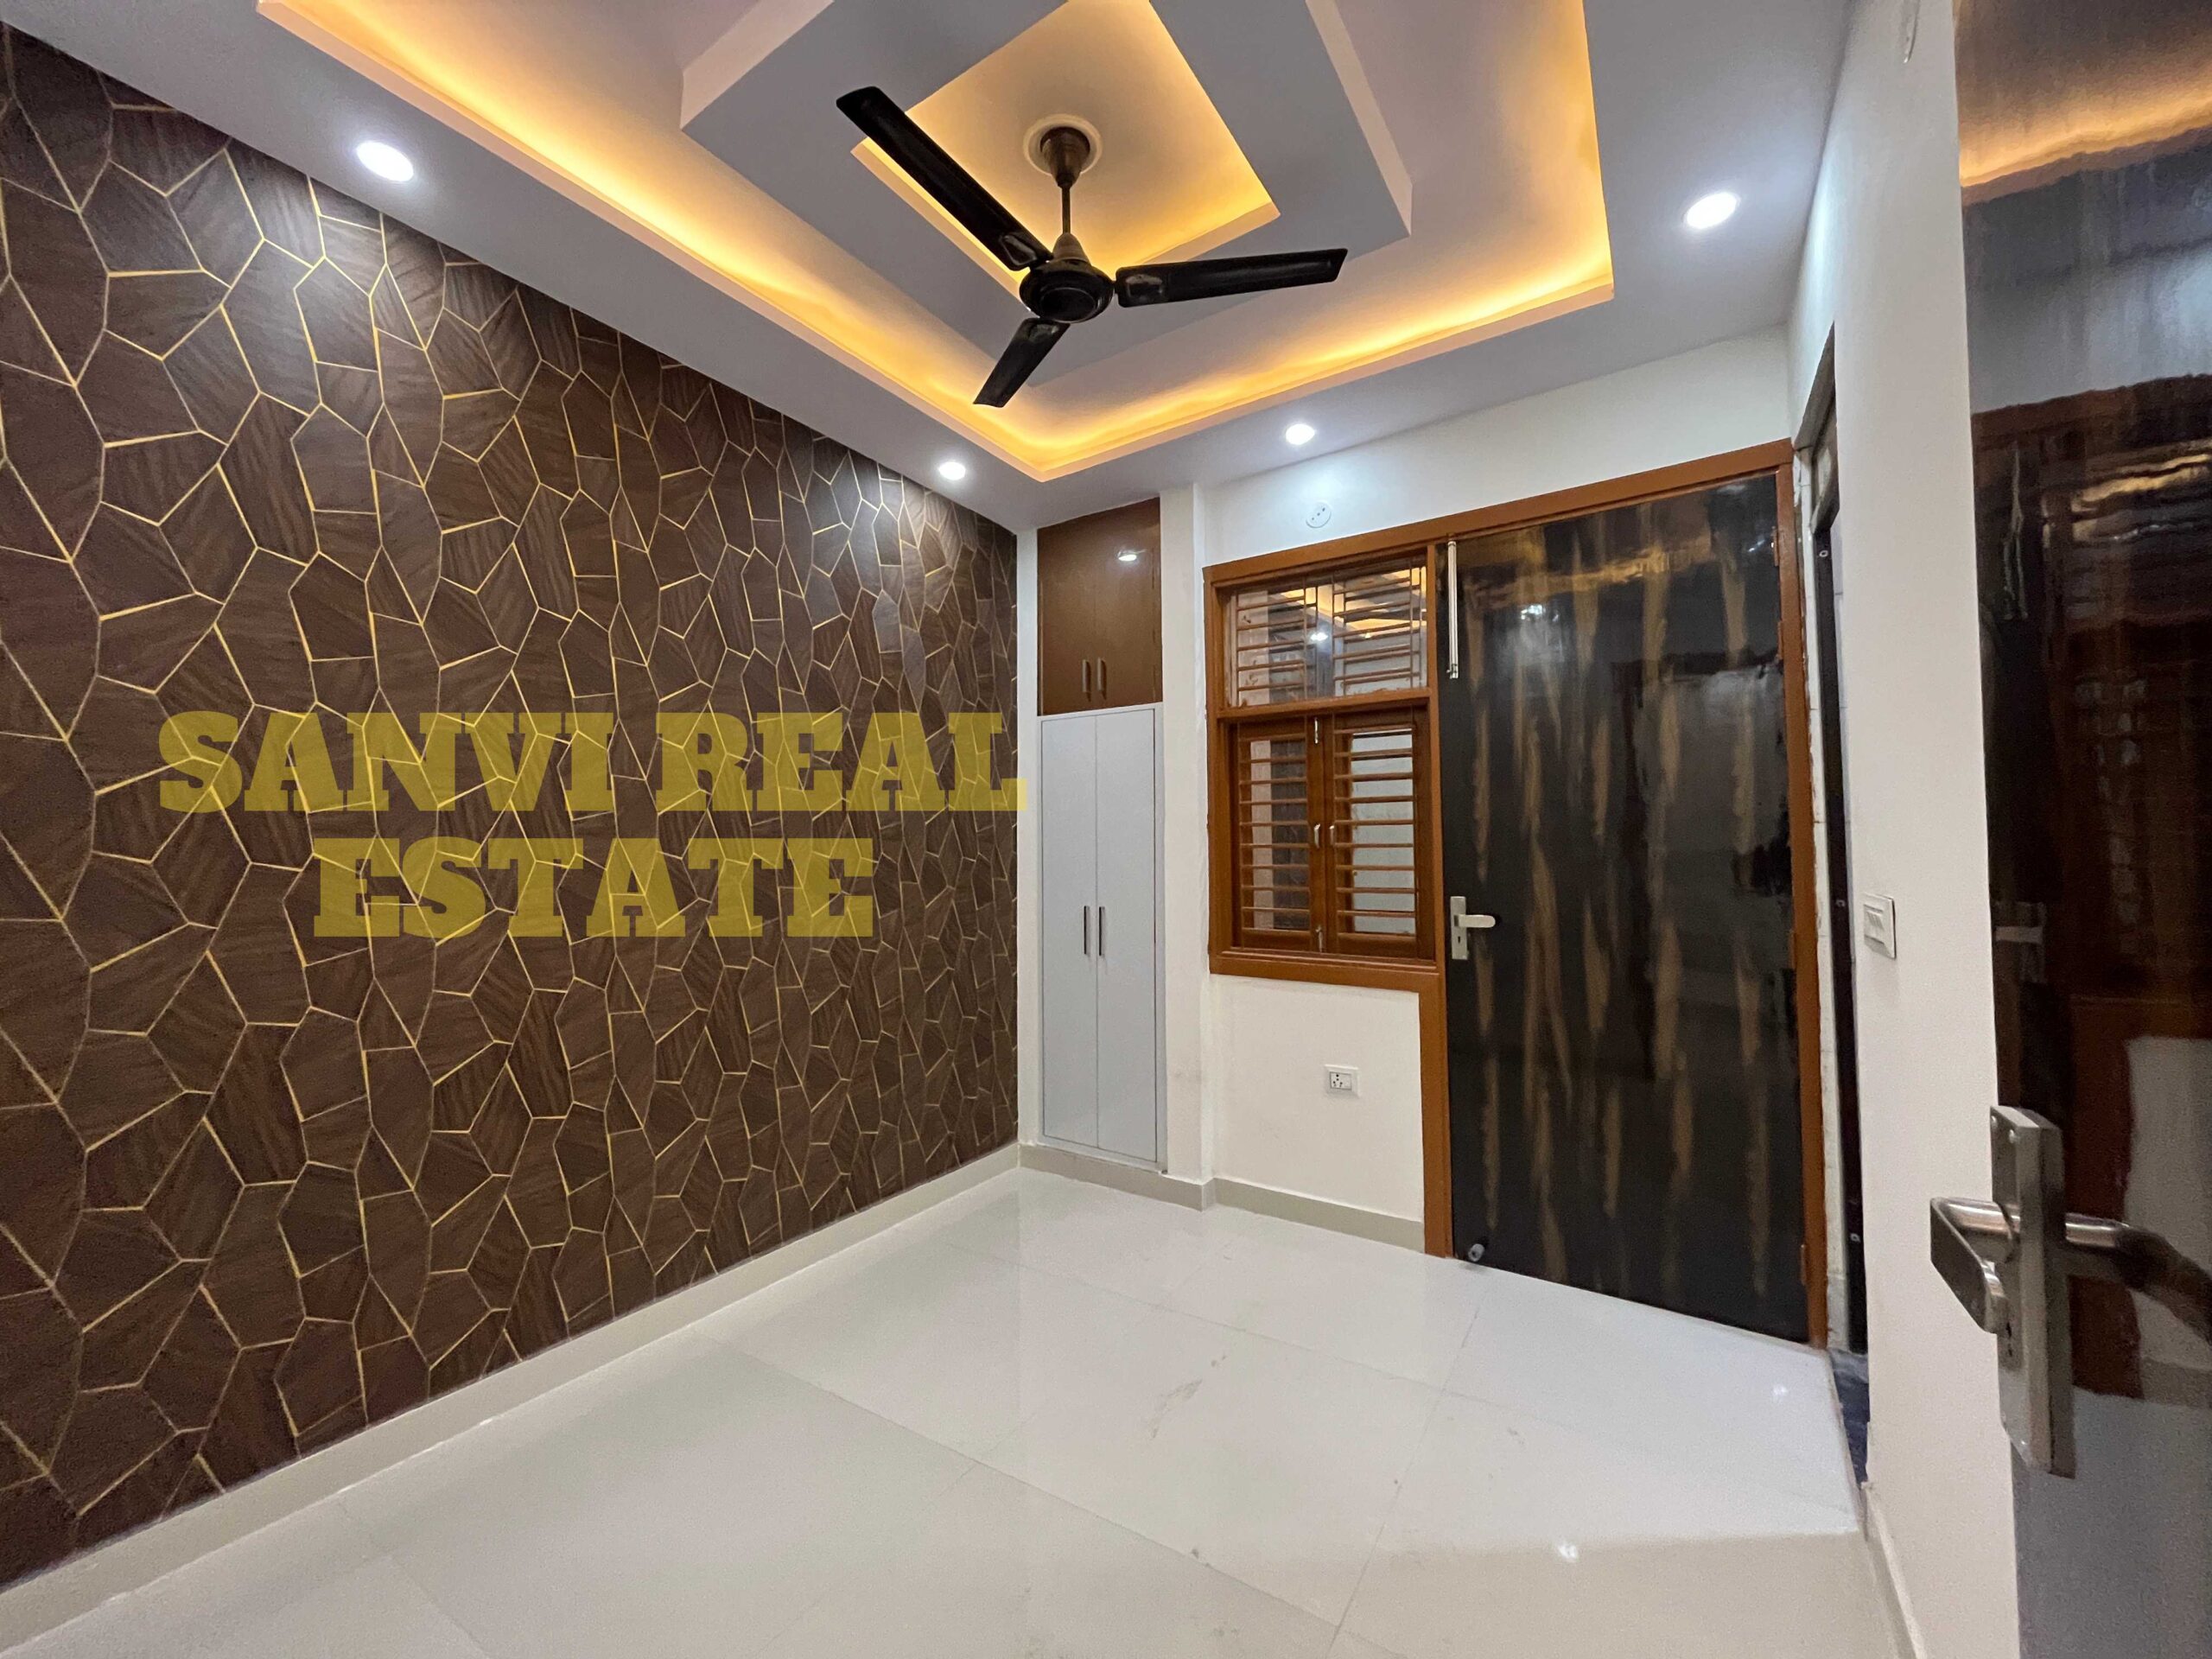 1 BHK Semi Furnished Flat in Uttam Nagar | Sanvi Real Estate